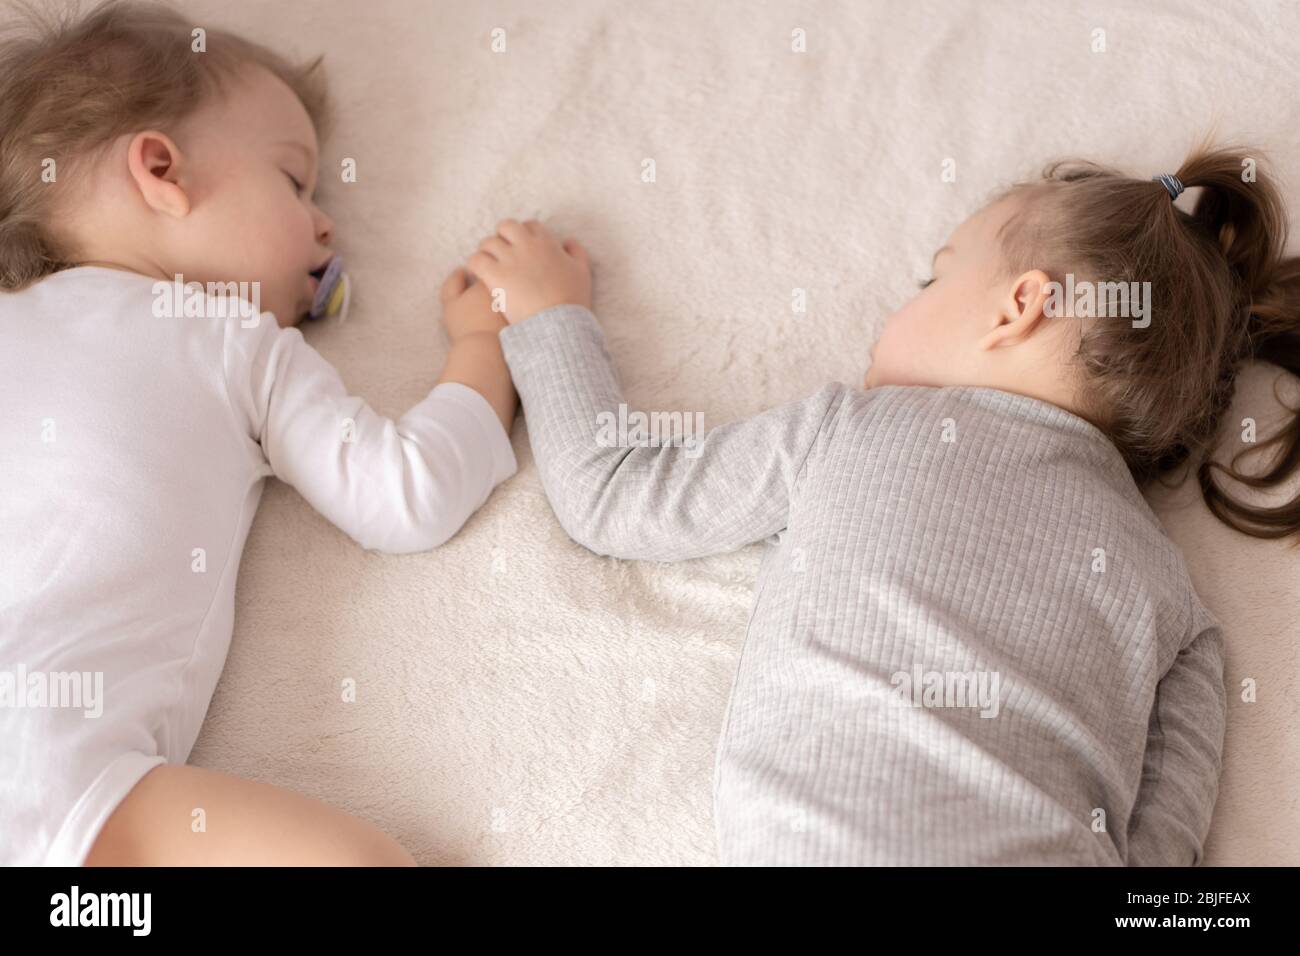 Enfance, sommeil, détente, famille, style de vie concept - deux jeunes enfants de 2 et 3 ans vêtus de body blanc et beige dorment sur un beige Banque D'Images